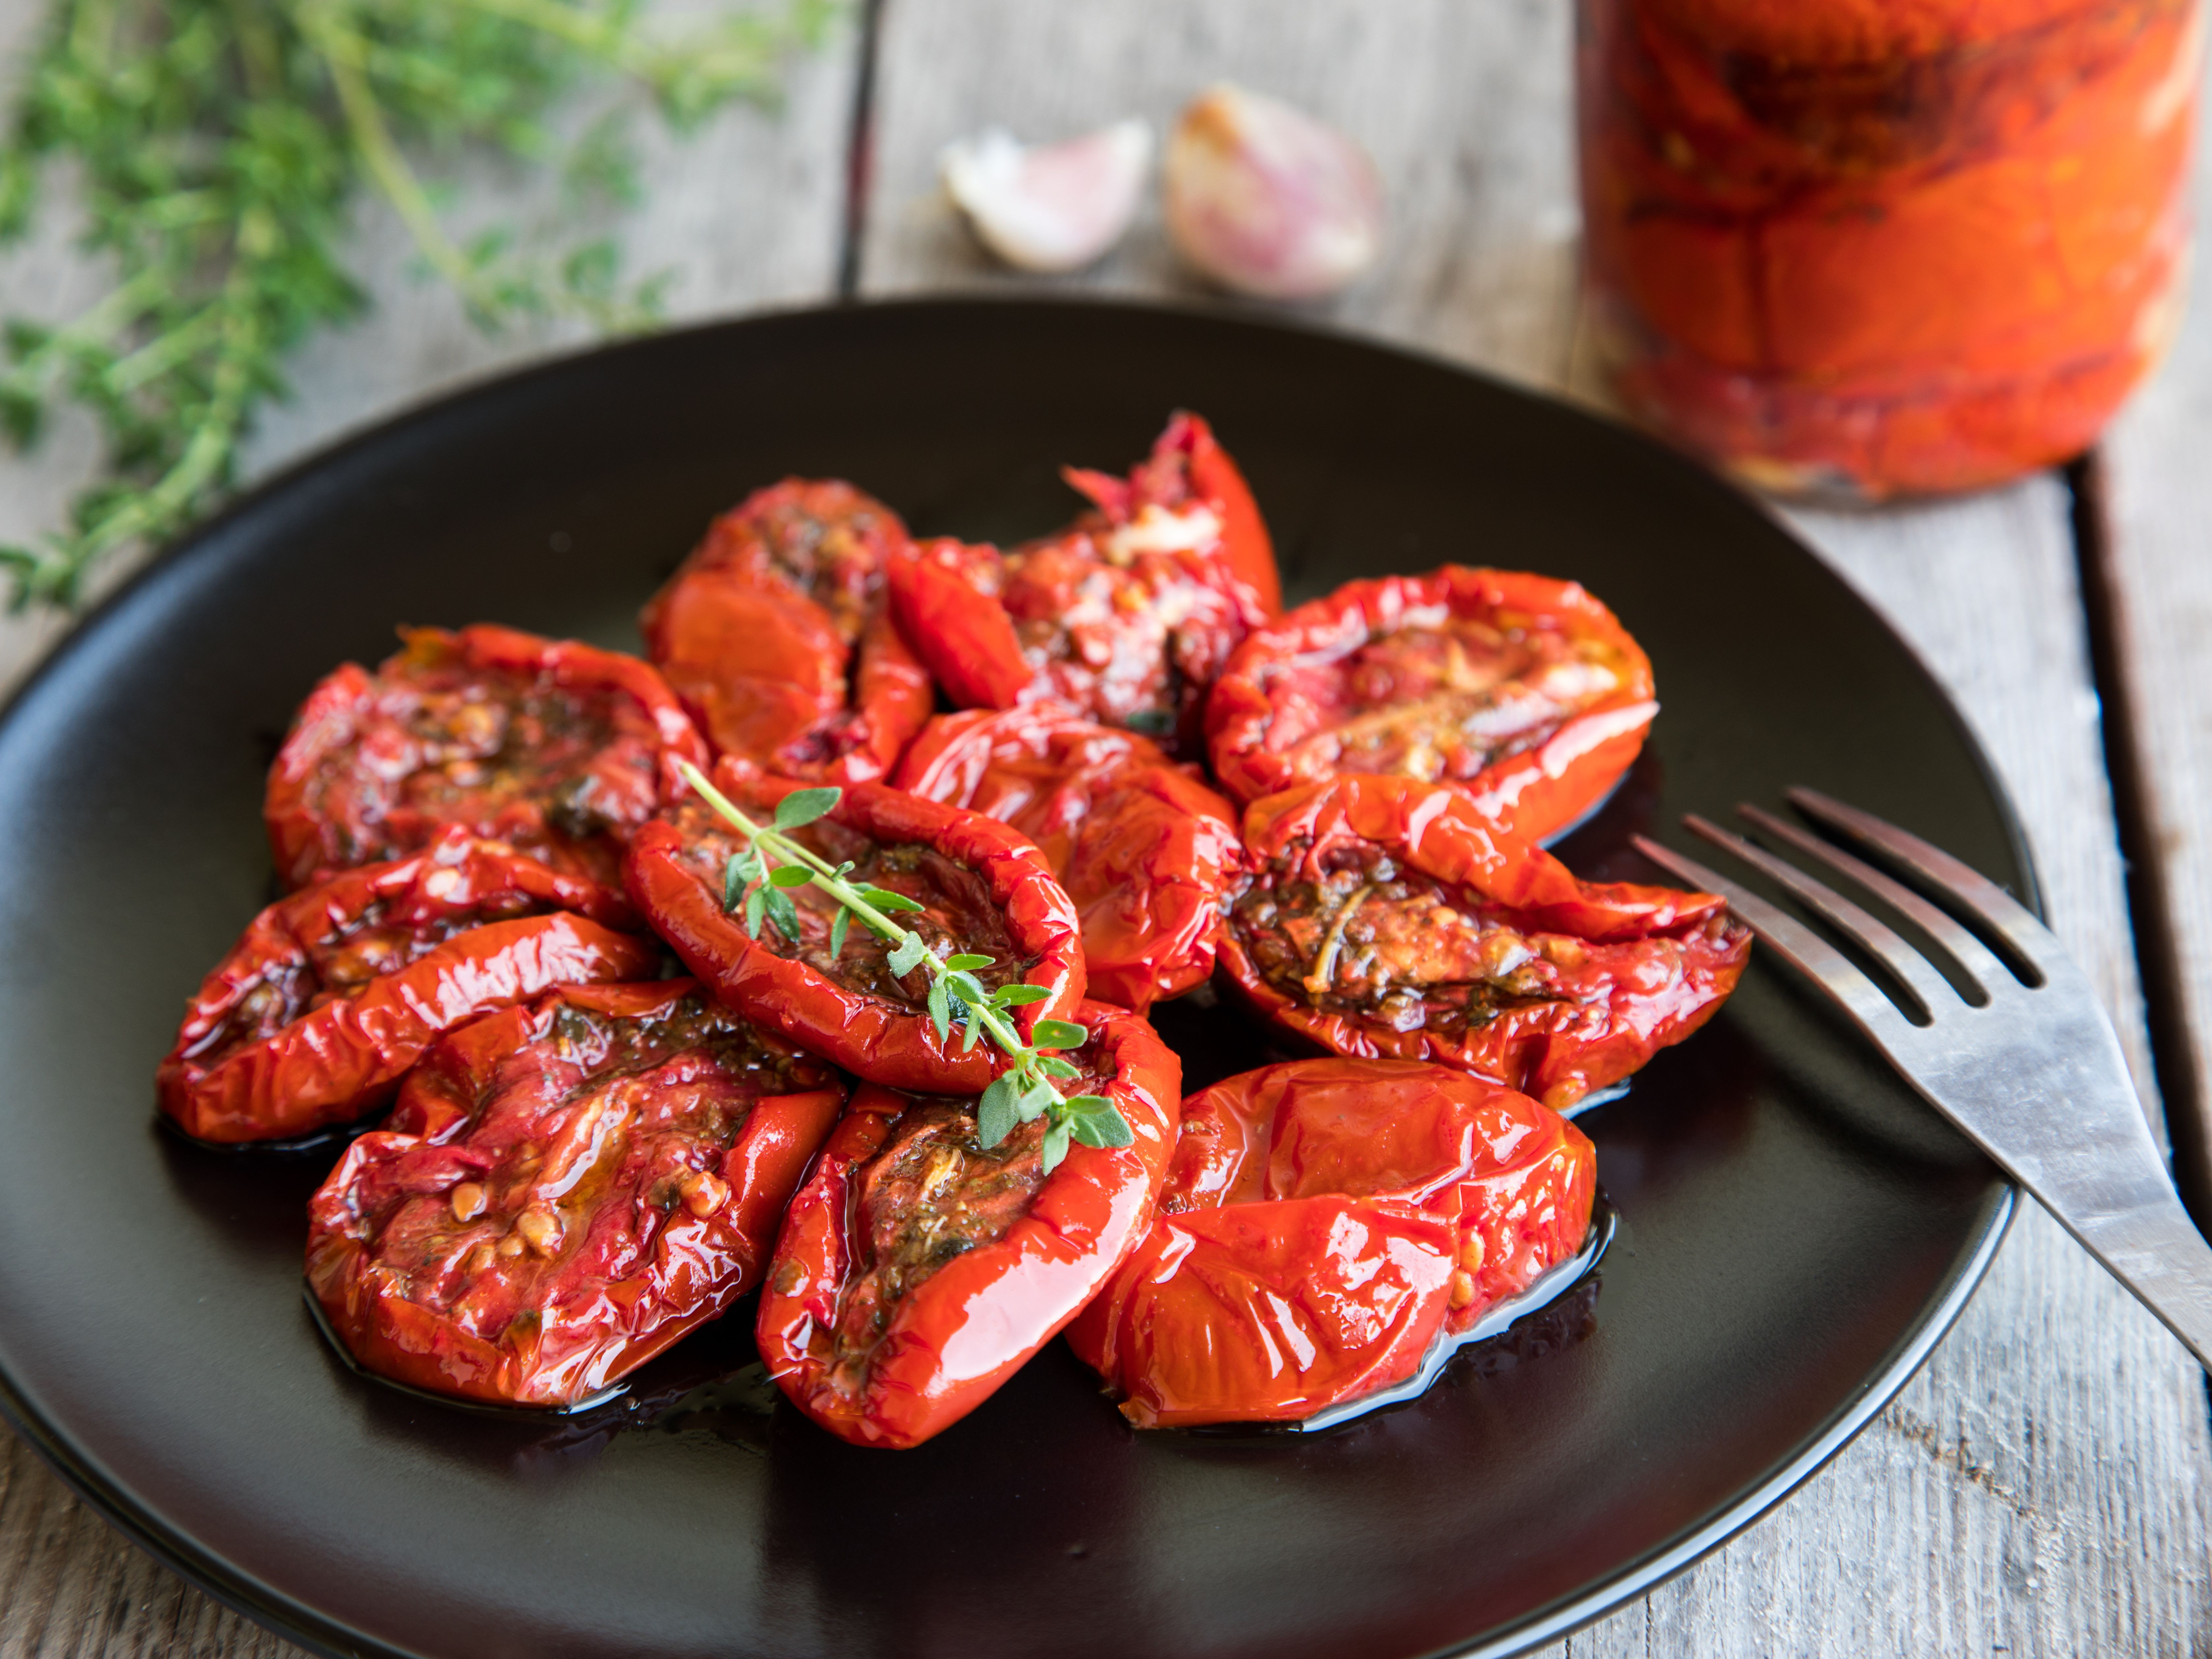 Recette facile de tomates séchées au four!